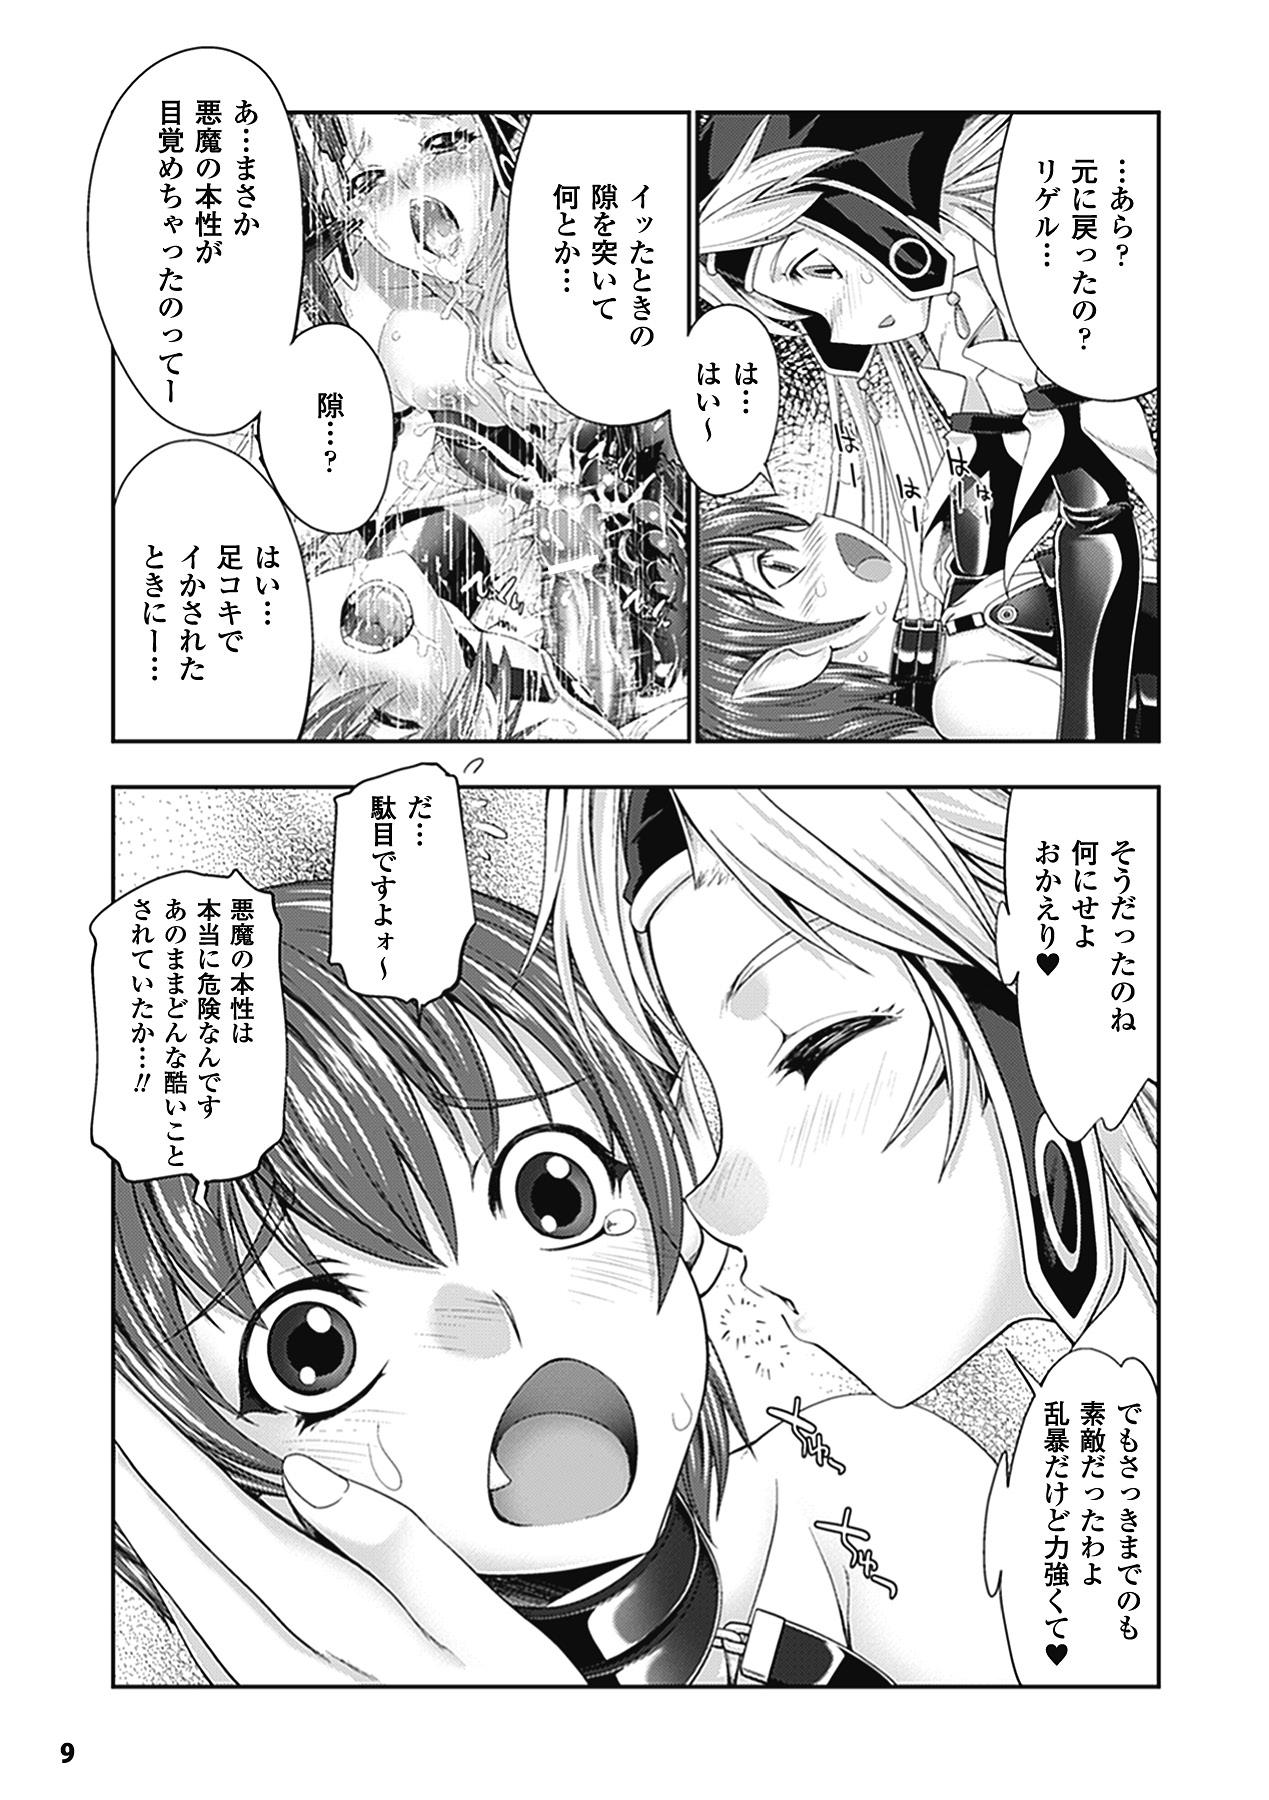 Spit Megami Crisis 9 Que - Page 9